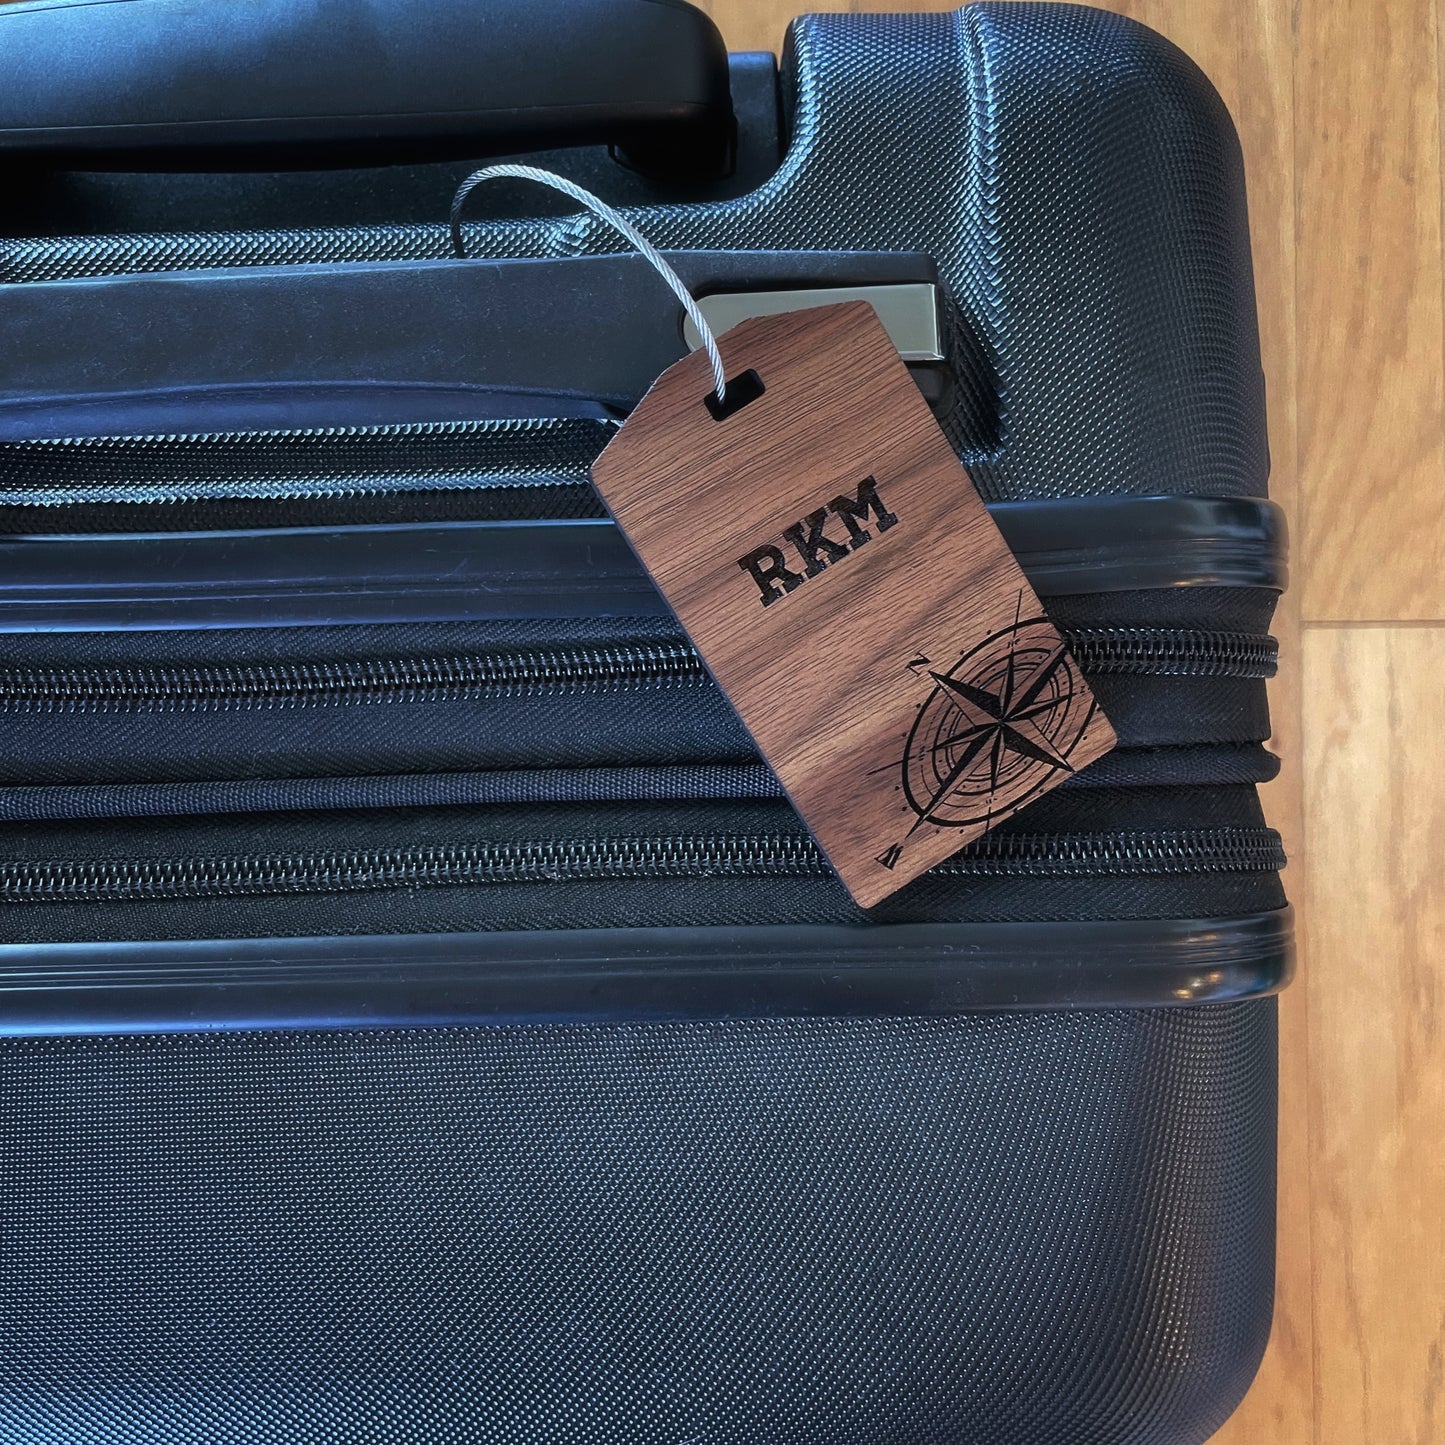 Custom Laser engraved luggage tag, custom wood luggage tags